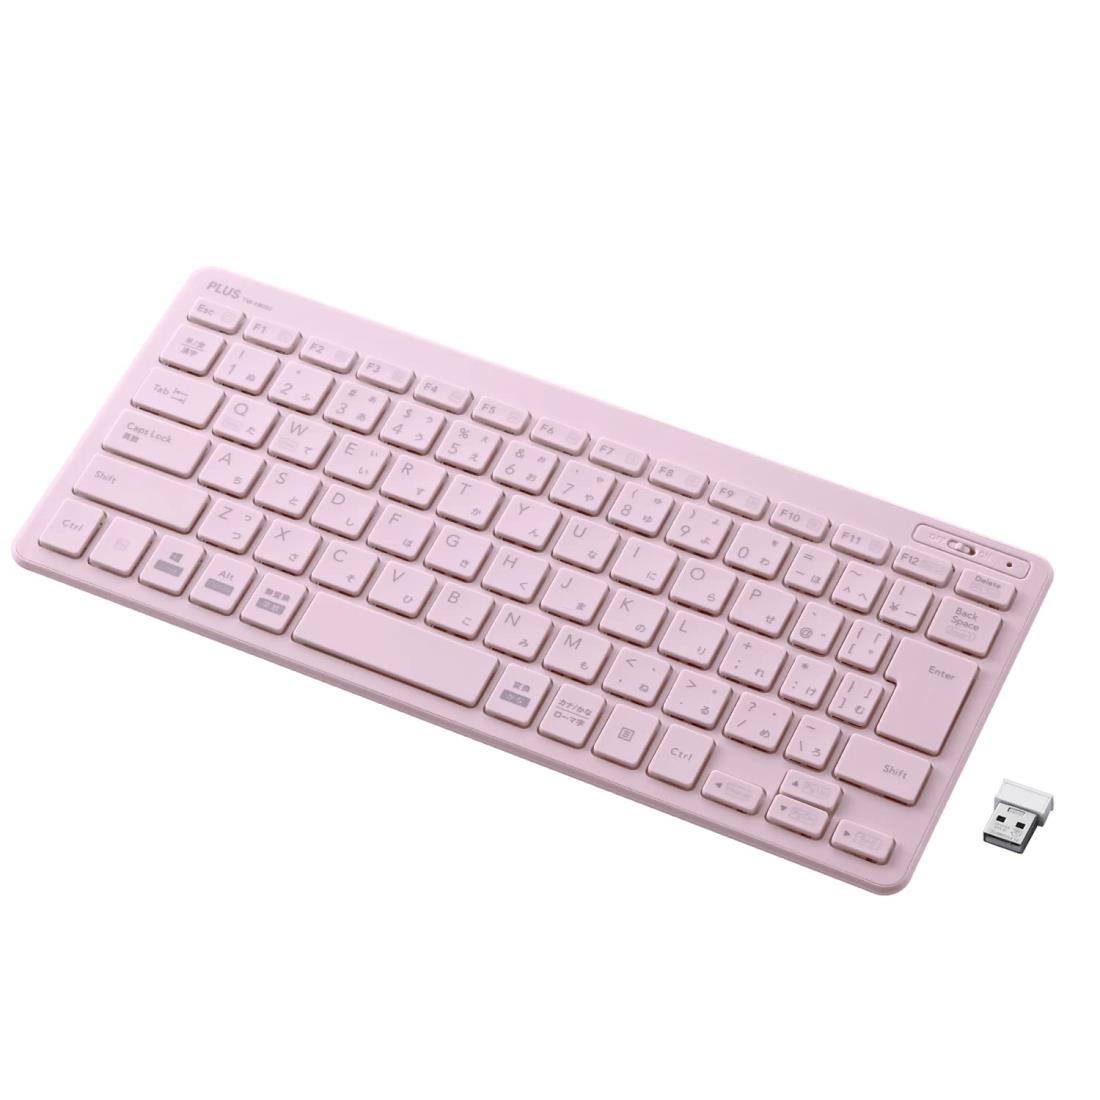 PLUS キーボード ジブンイロ 薄・ミニ ワイヤレスキーボード ピンク TW-KB002 428-855